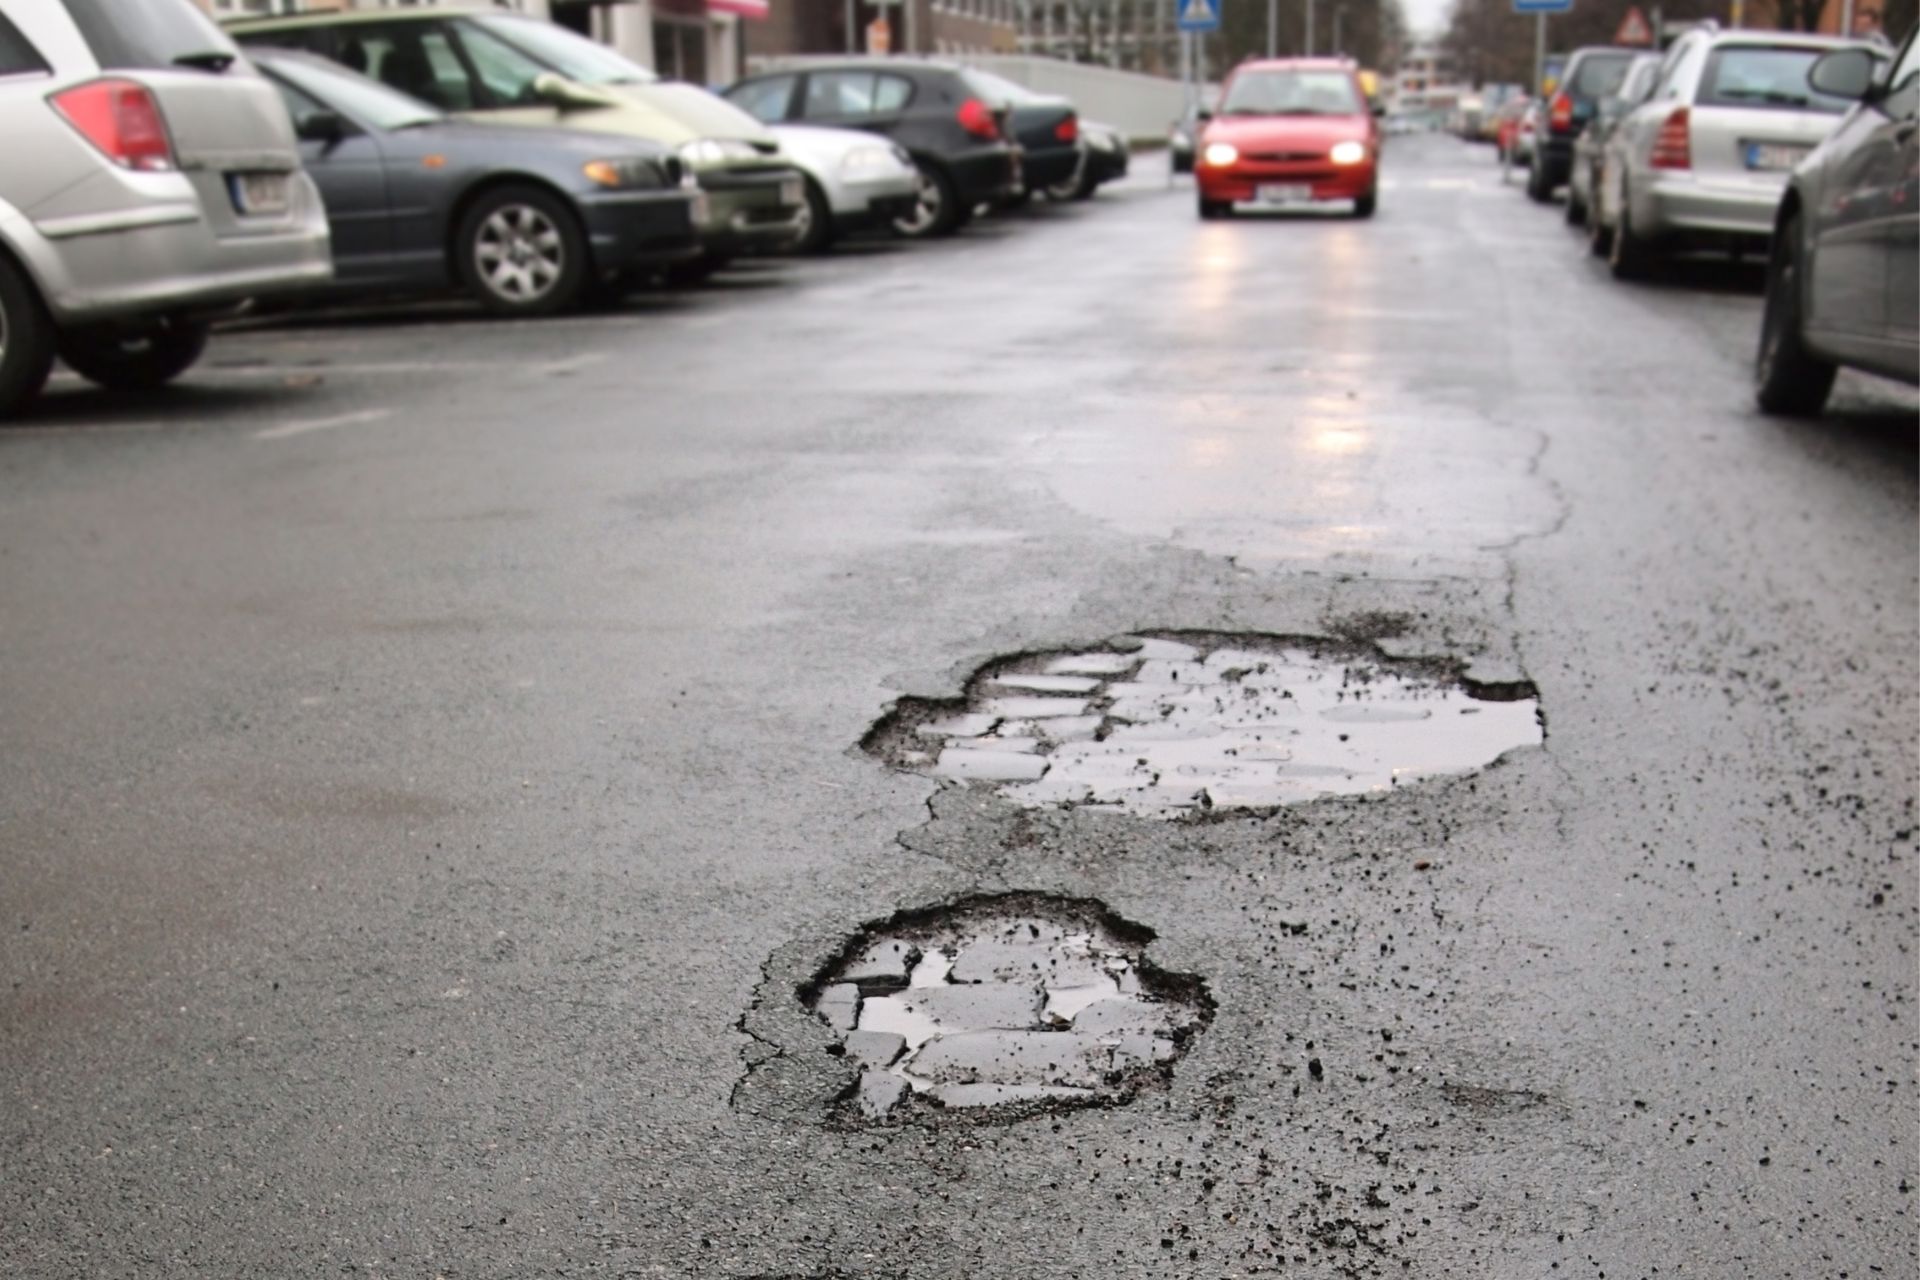 A Milano sono sorte buche e voragini ovunque sul manto stradale: quanto spende ogni anno il Comune per la manutenzione stradale?